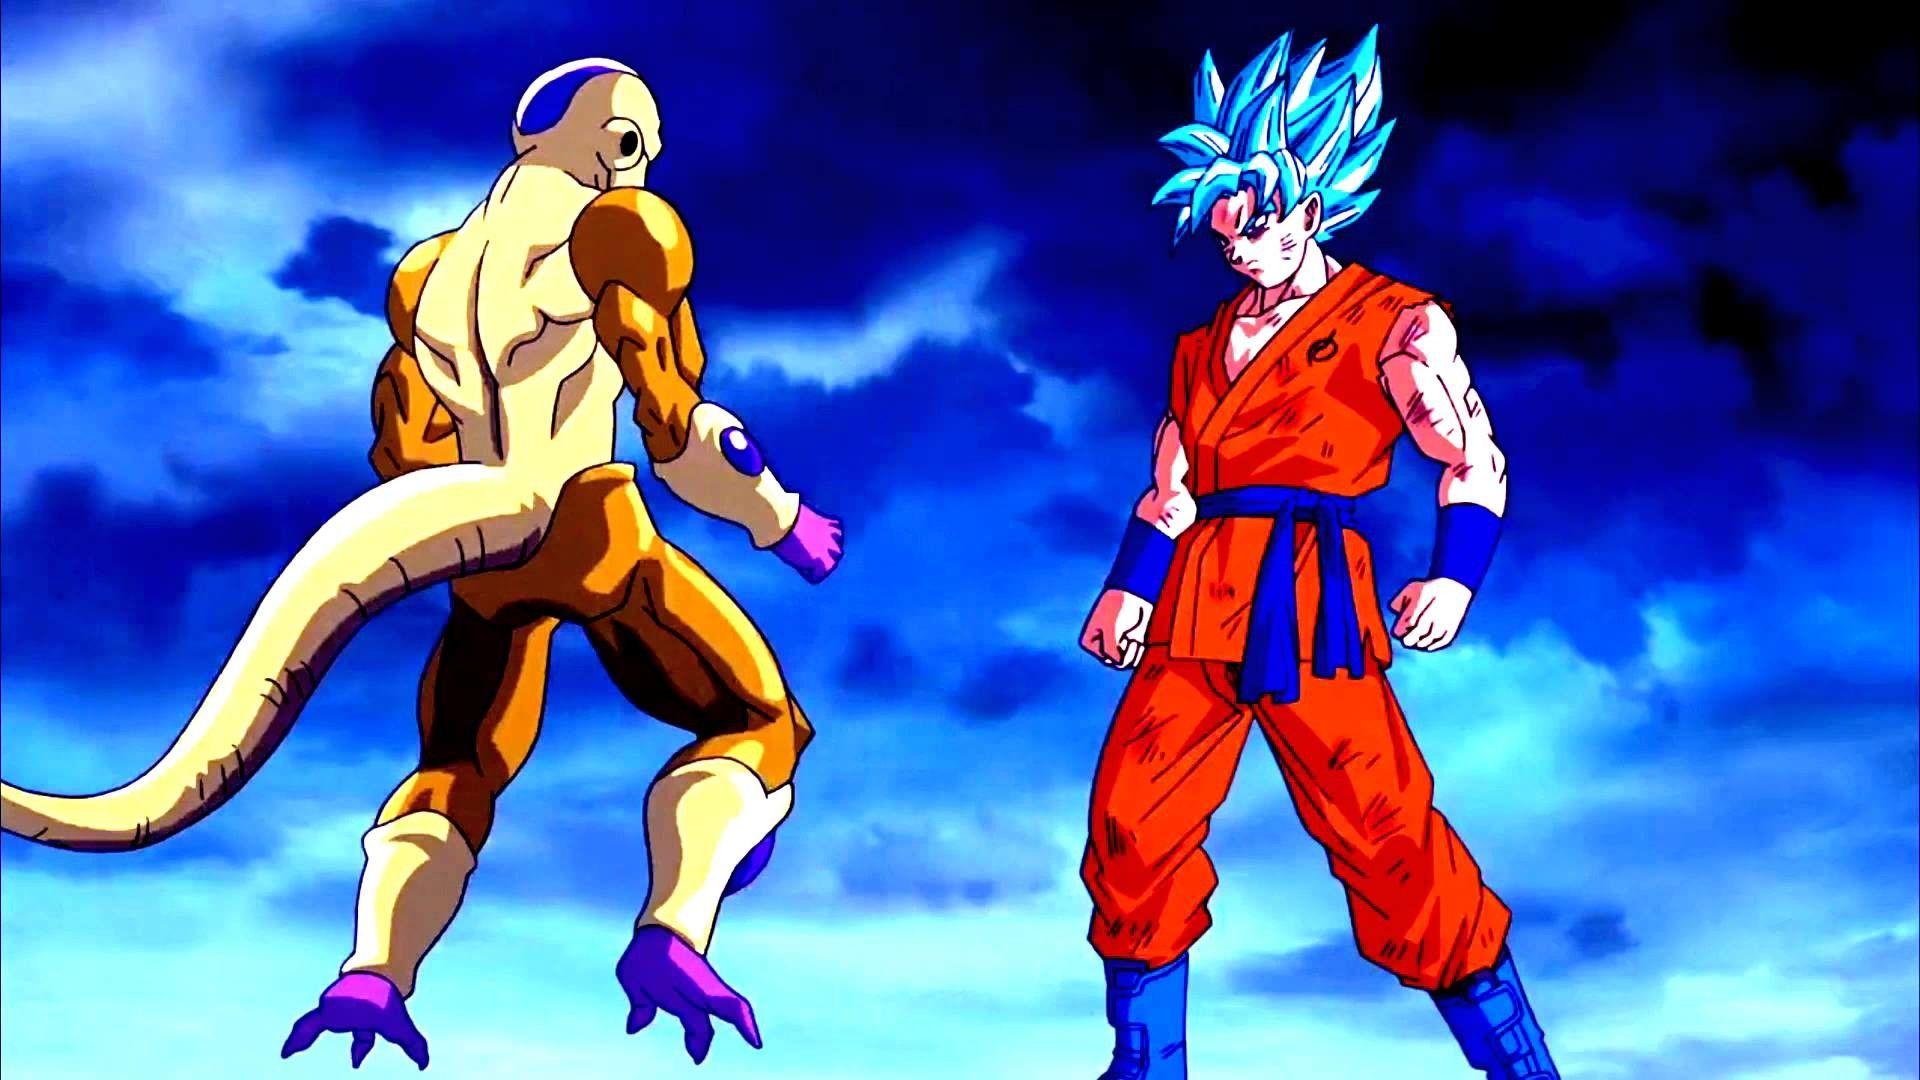 Goku vs Frieza Wallpapers - Top Free Goku vs Frieza Backgrounds